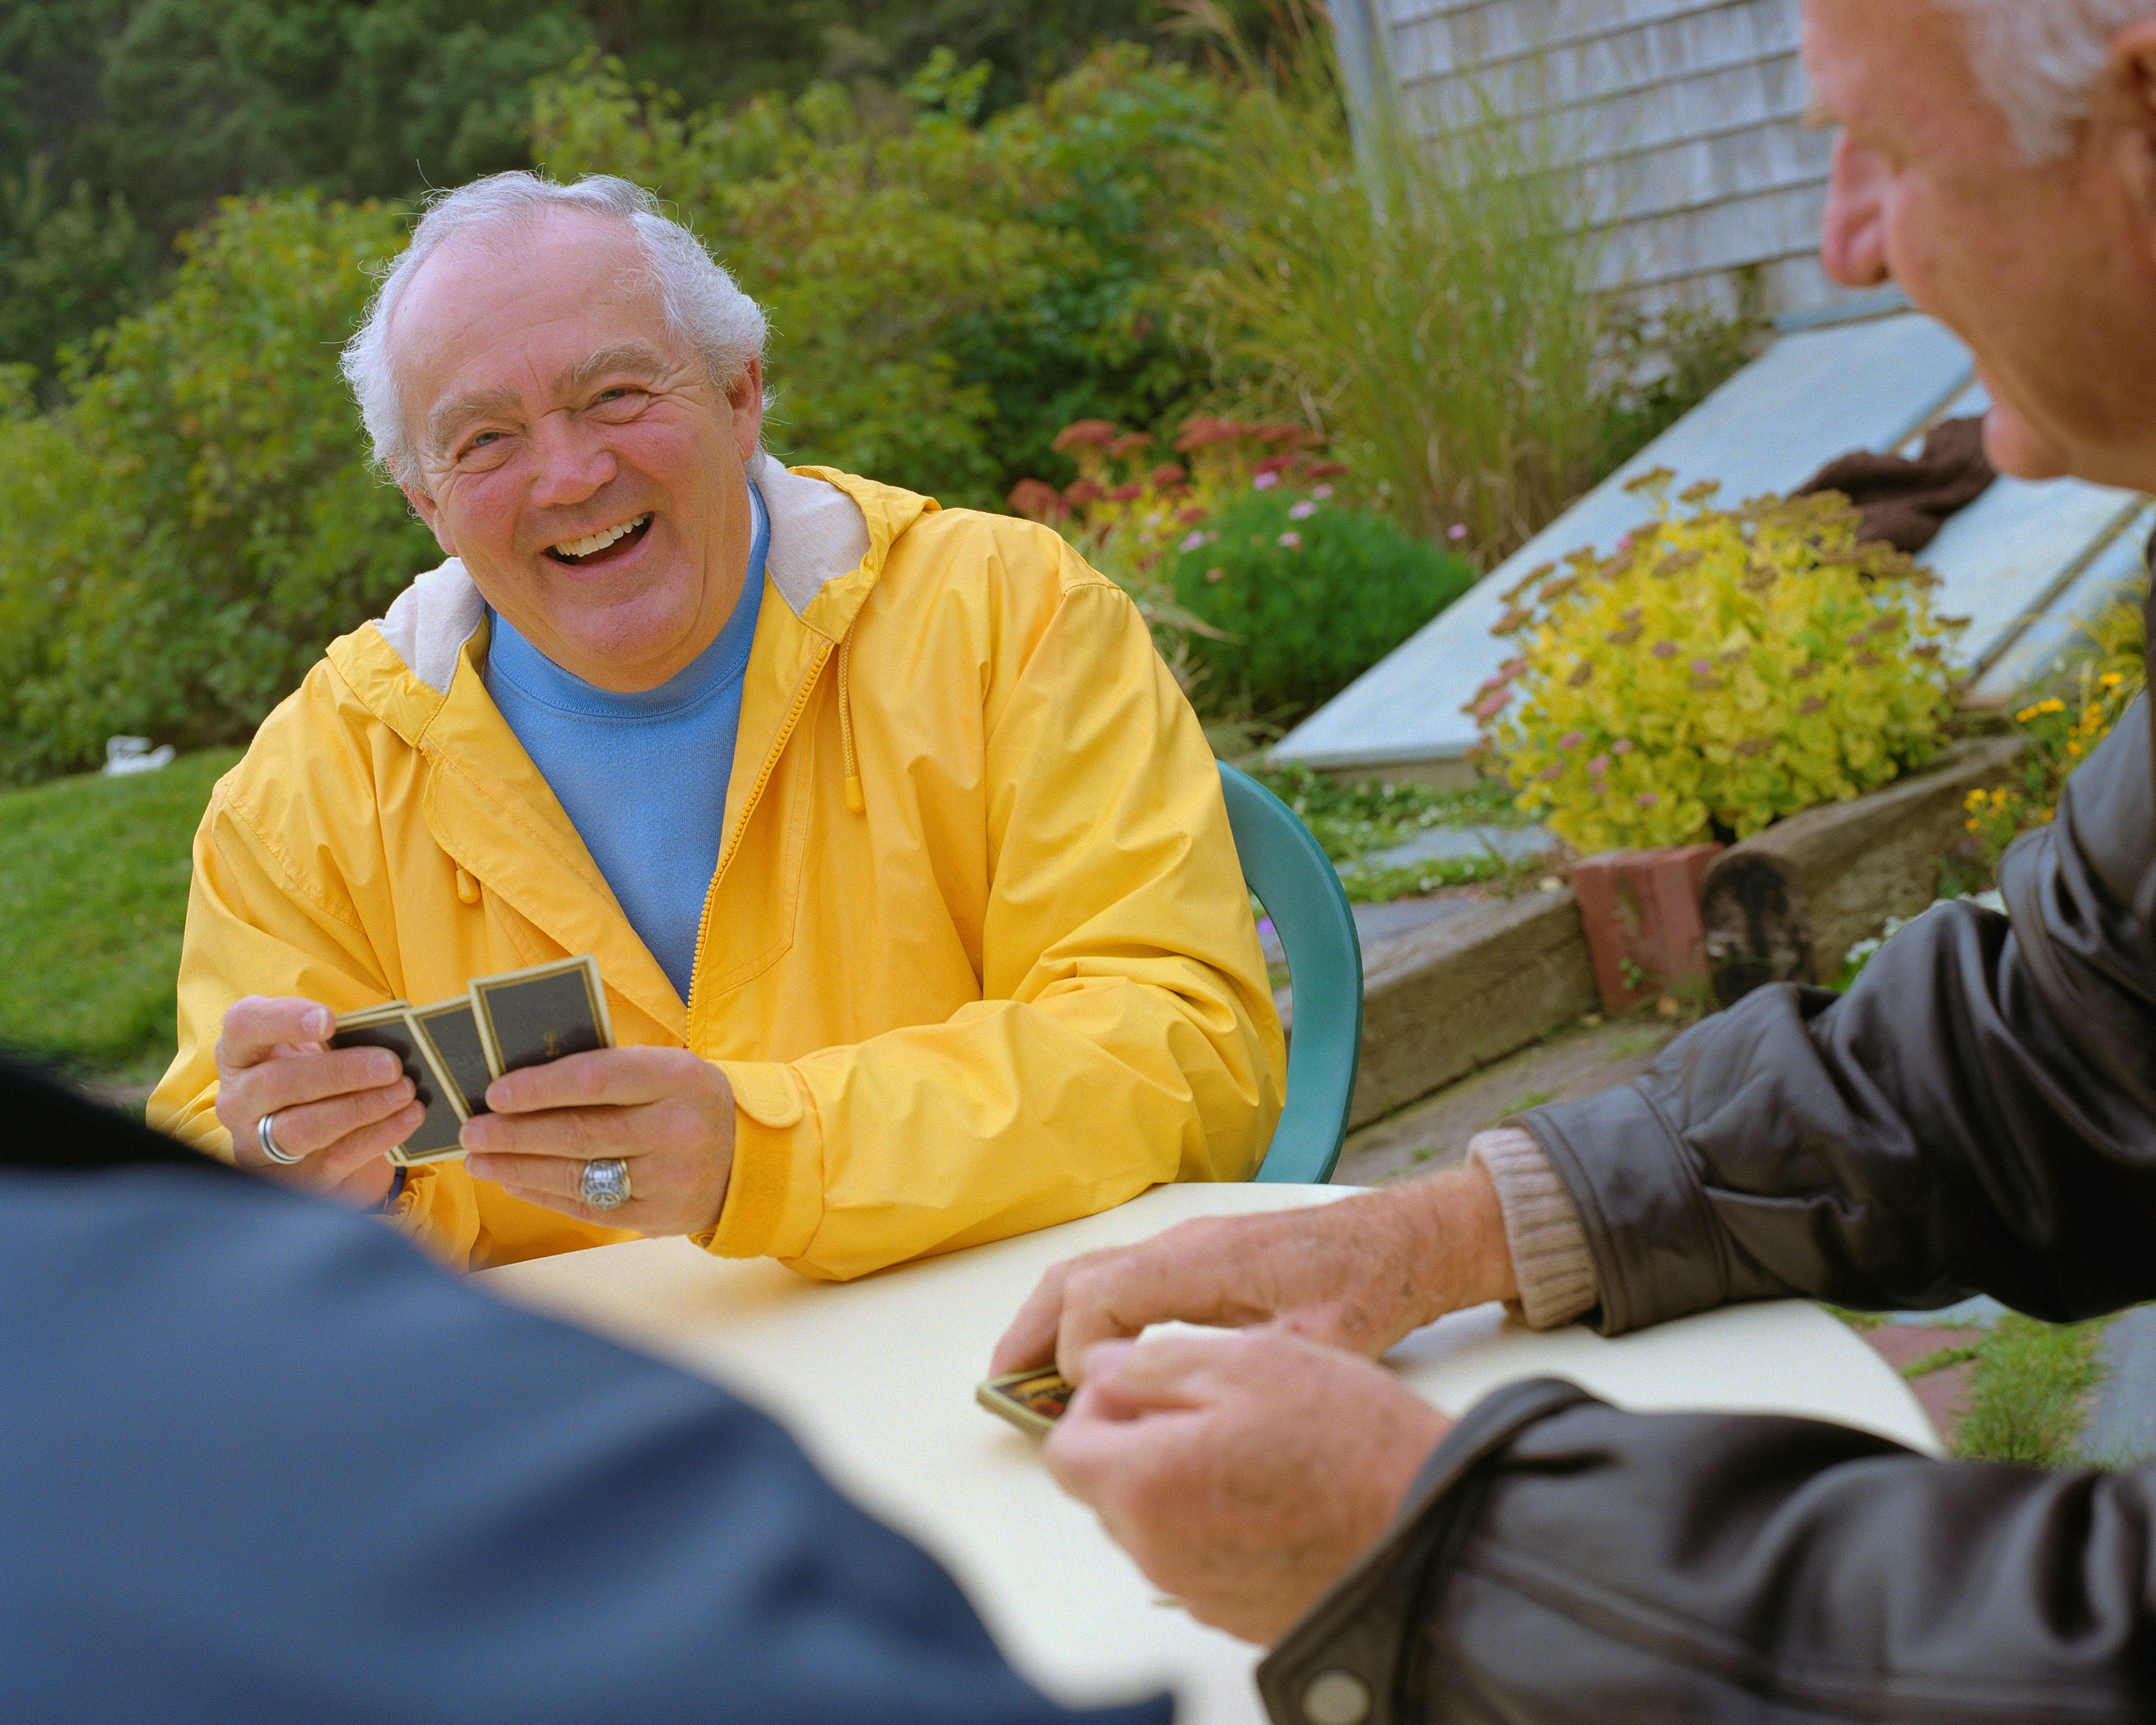 Older men laughing together